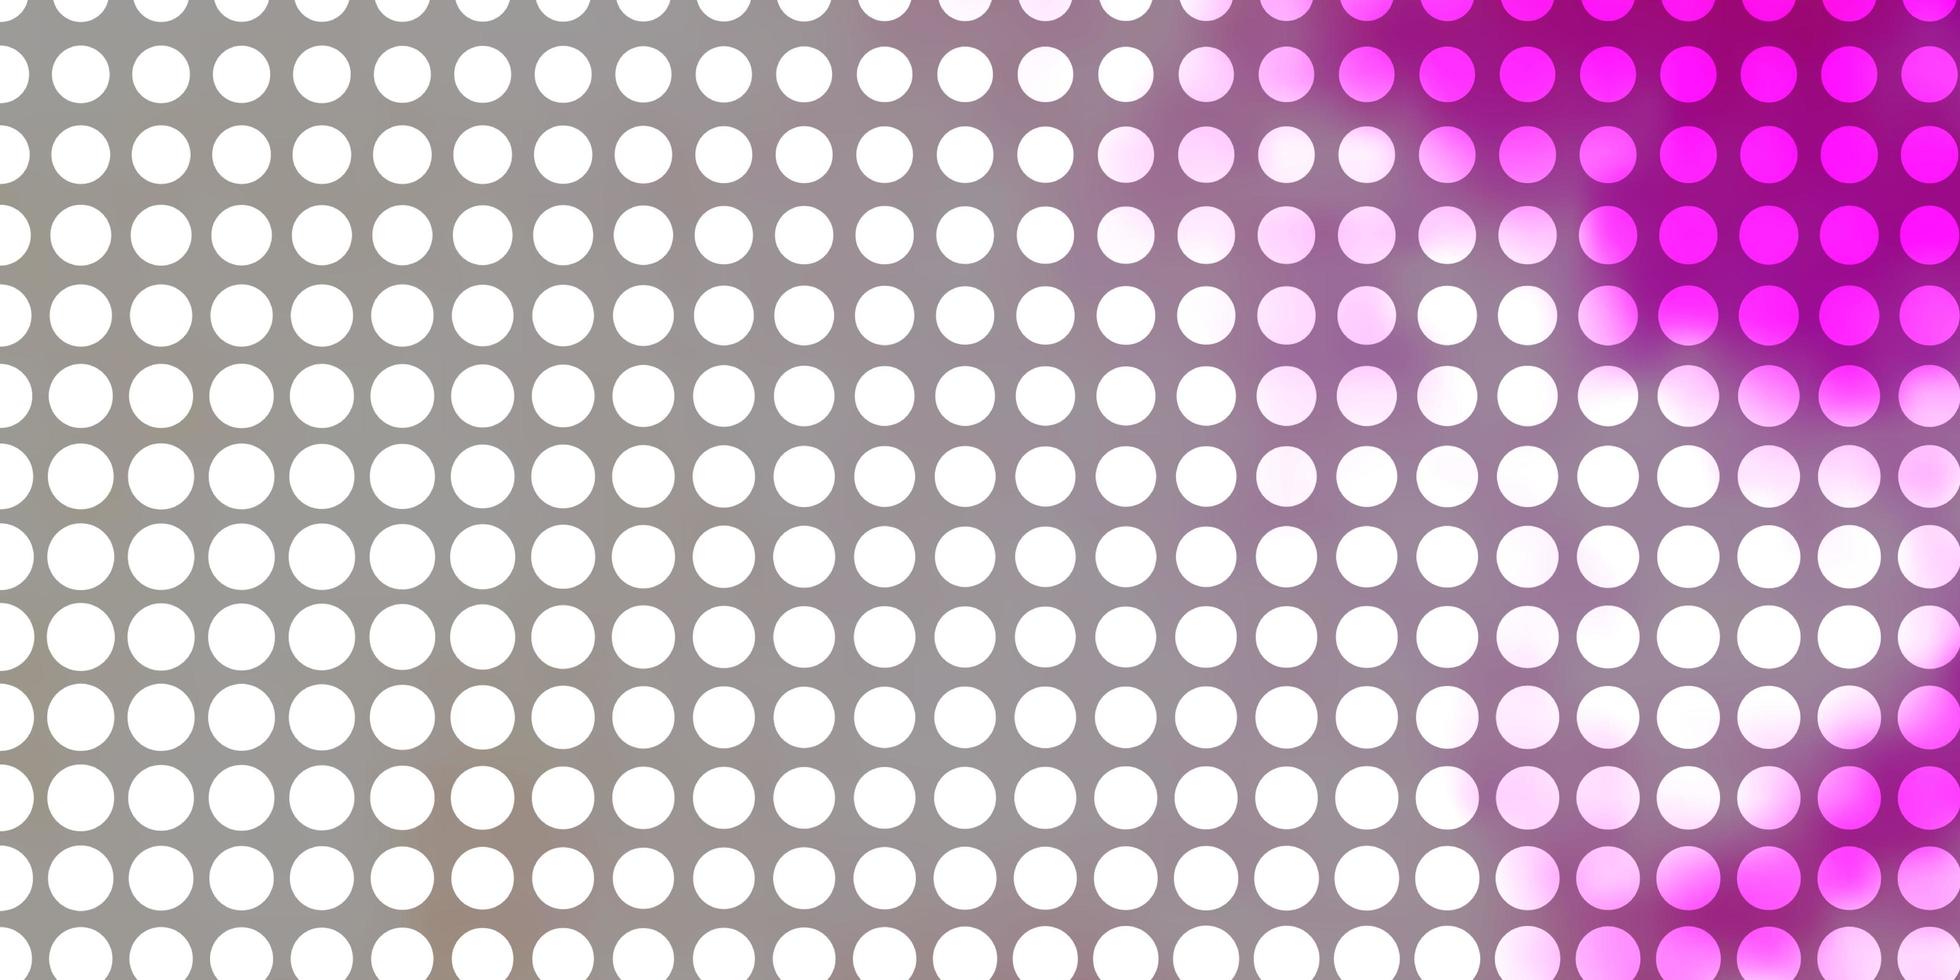 motivo vettoriale rosa chiaro giallo con cerchi illustrazione astratta moderna con motivo a forme circolari colorate per opuscoli volantini